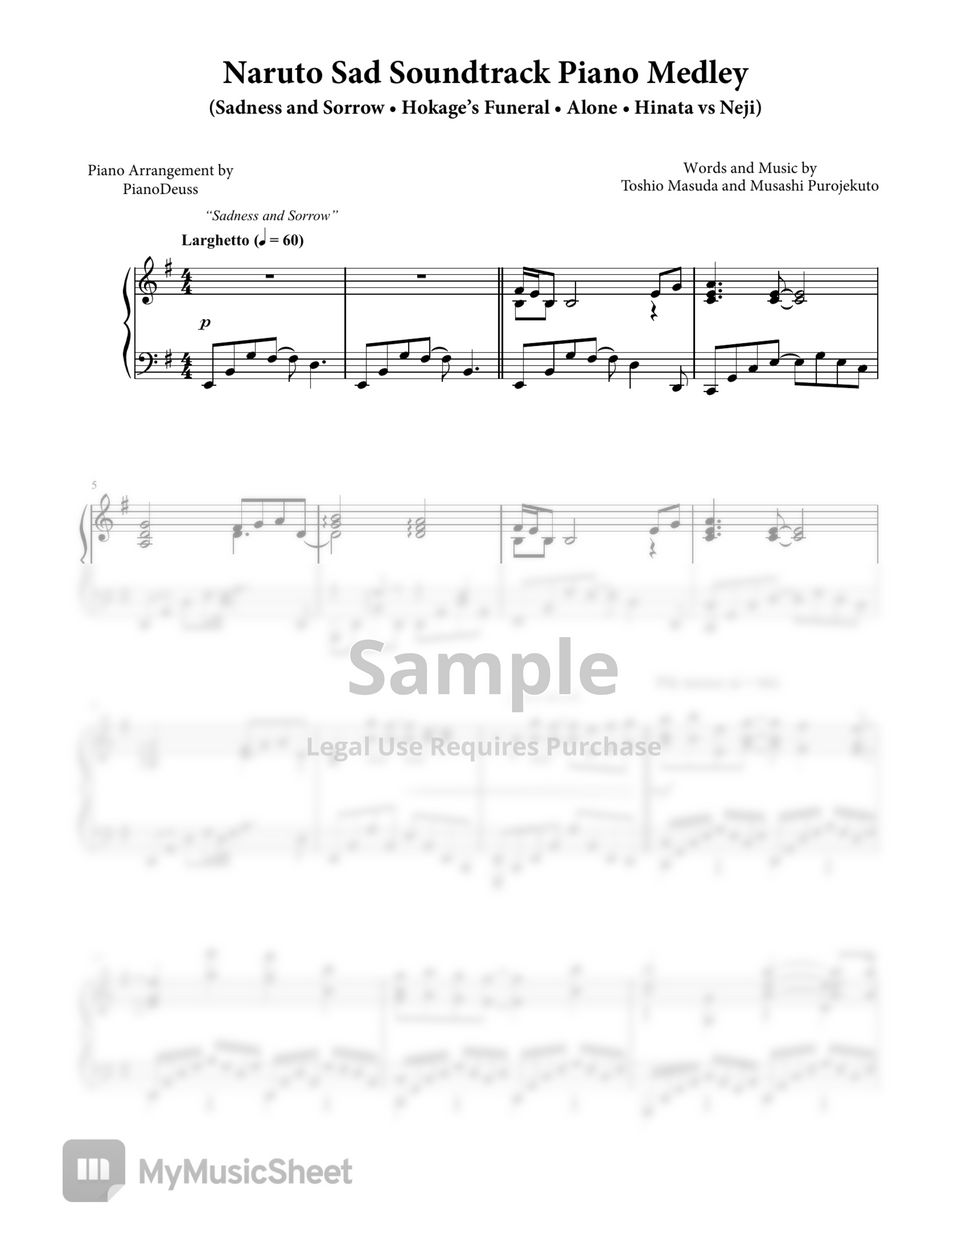 Yasuharu Takanashi, Toshio Masuda and Musashi Project - Naruto Sad Soundtrack Piano Medley by PianoDeuss